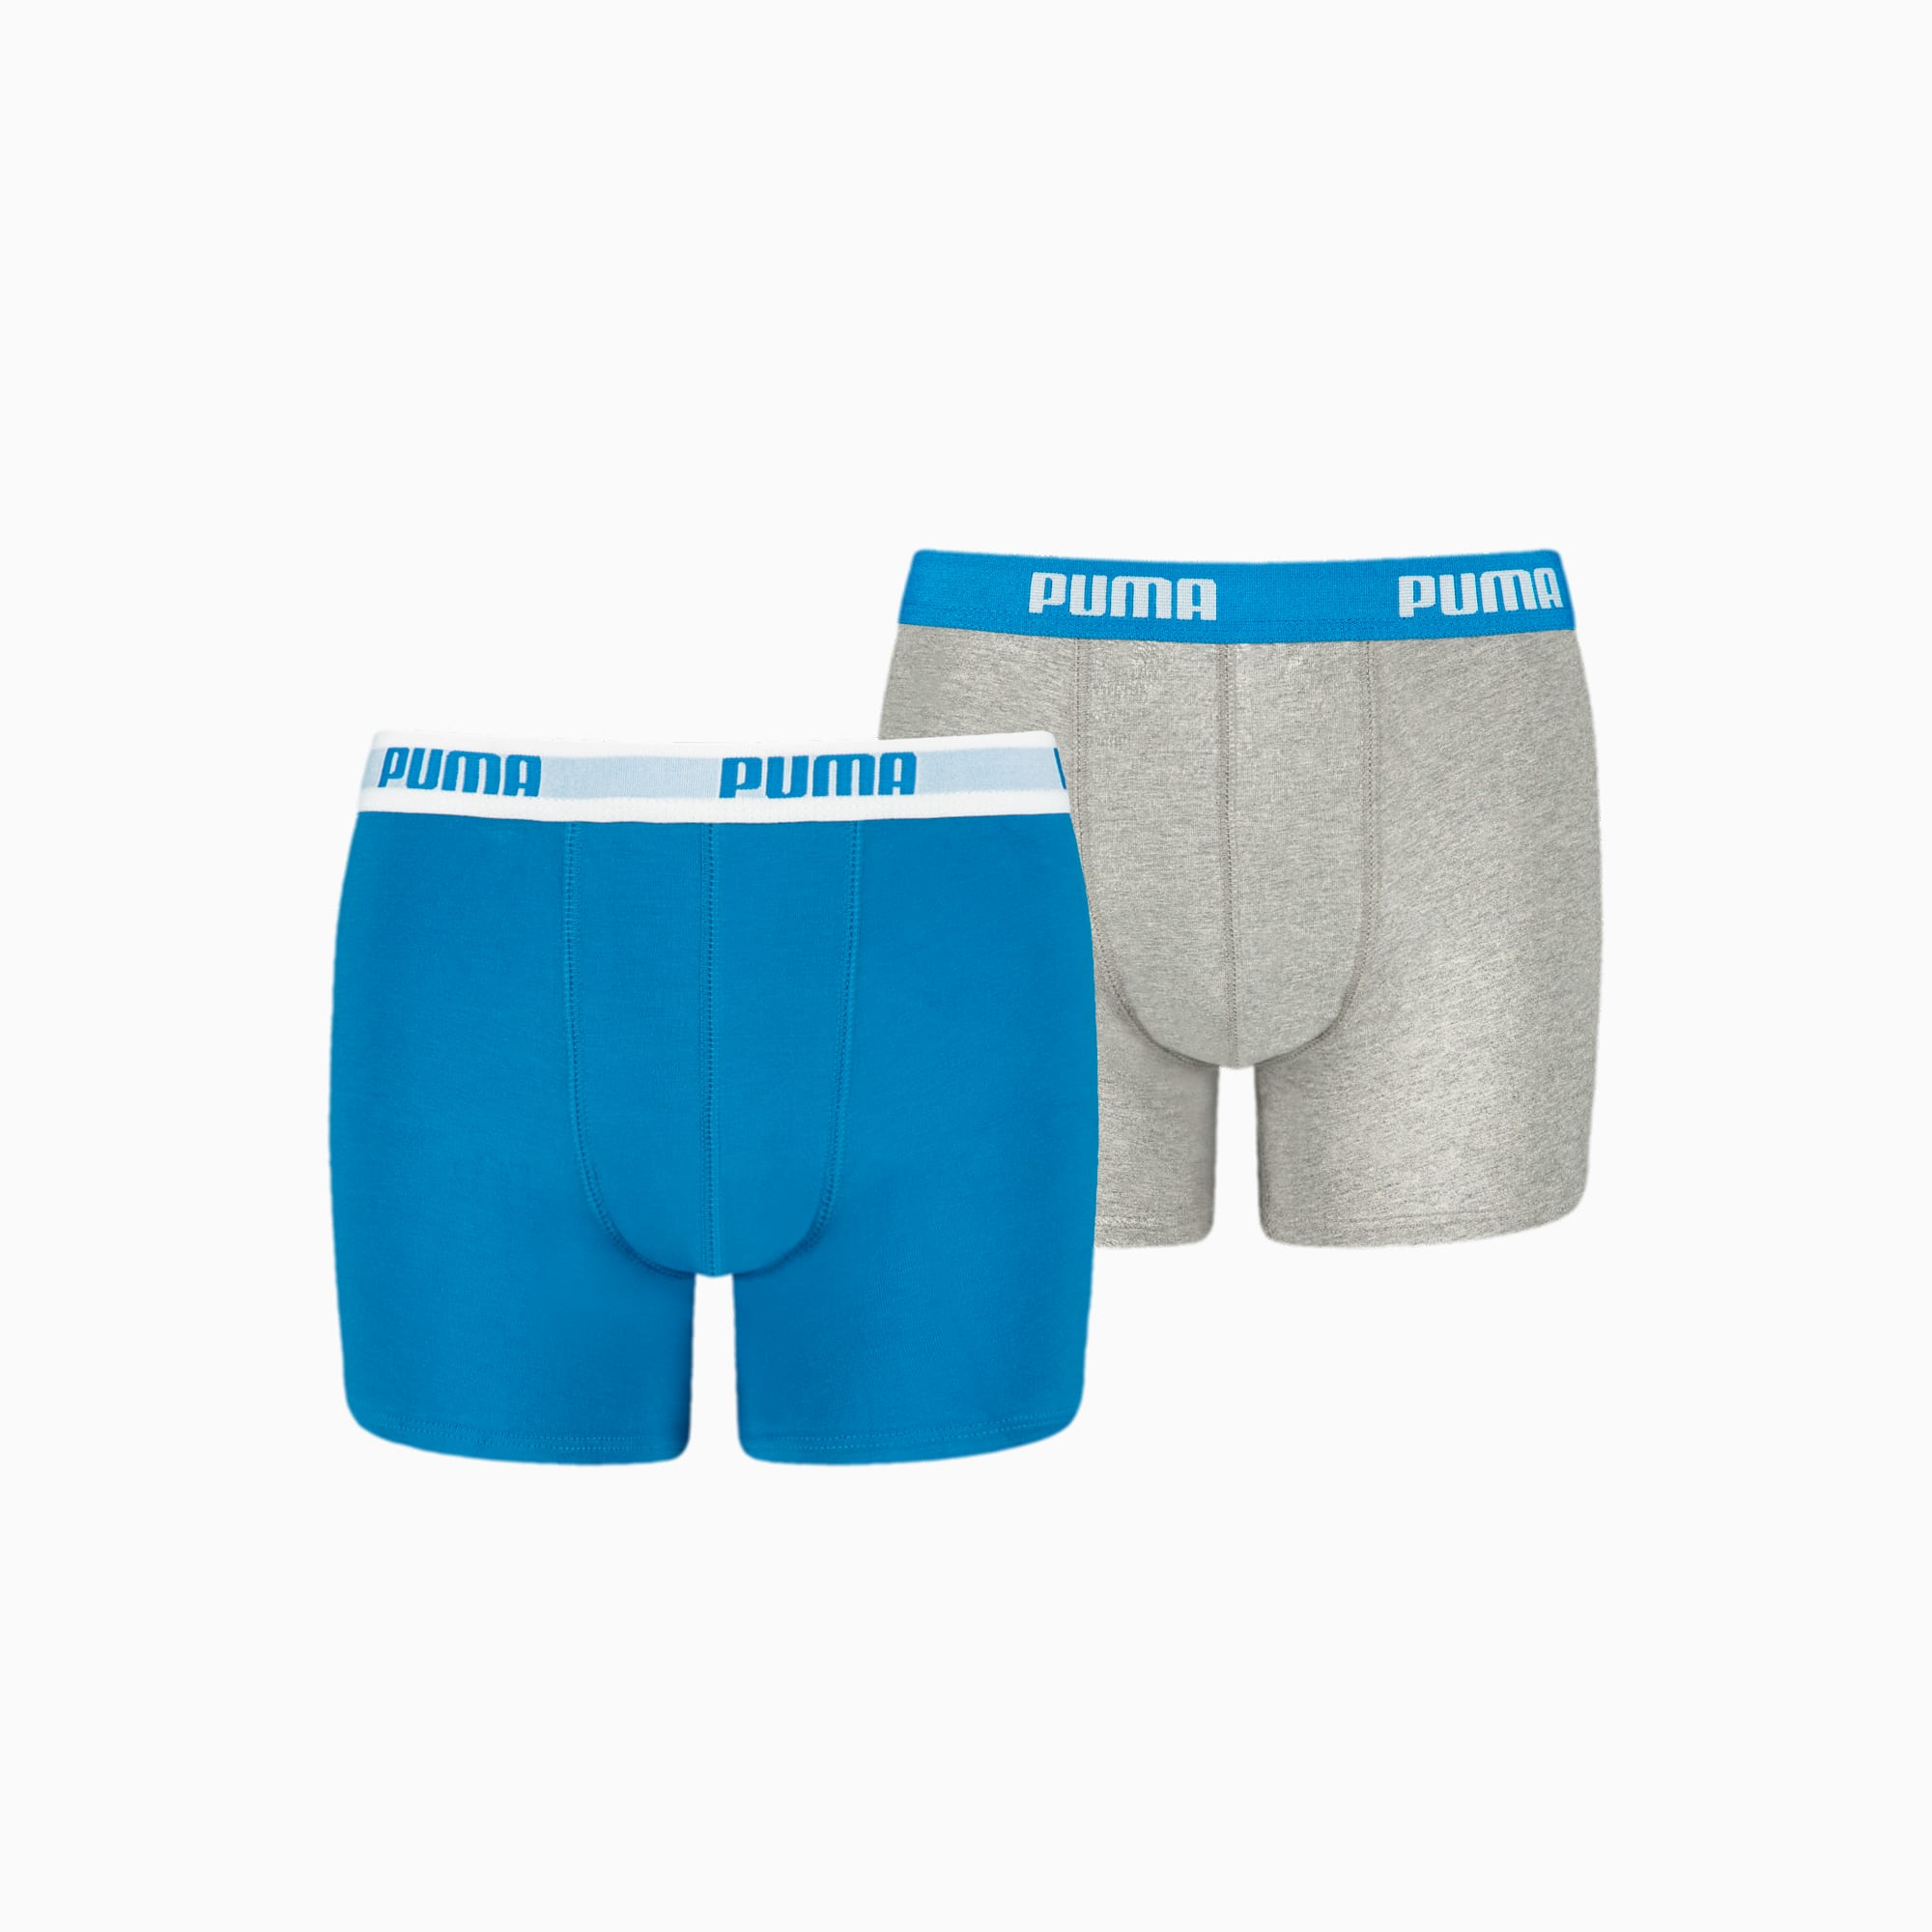 PUMA Basic jongensboxer (2-pack), Blauw/Grijs, Maat 176